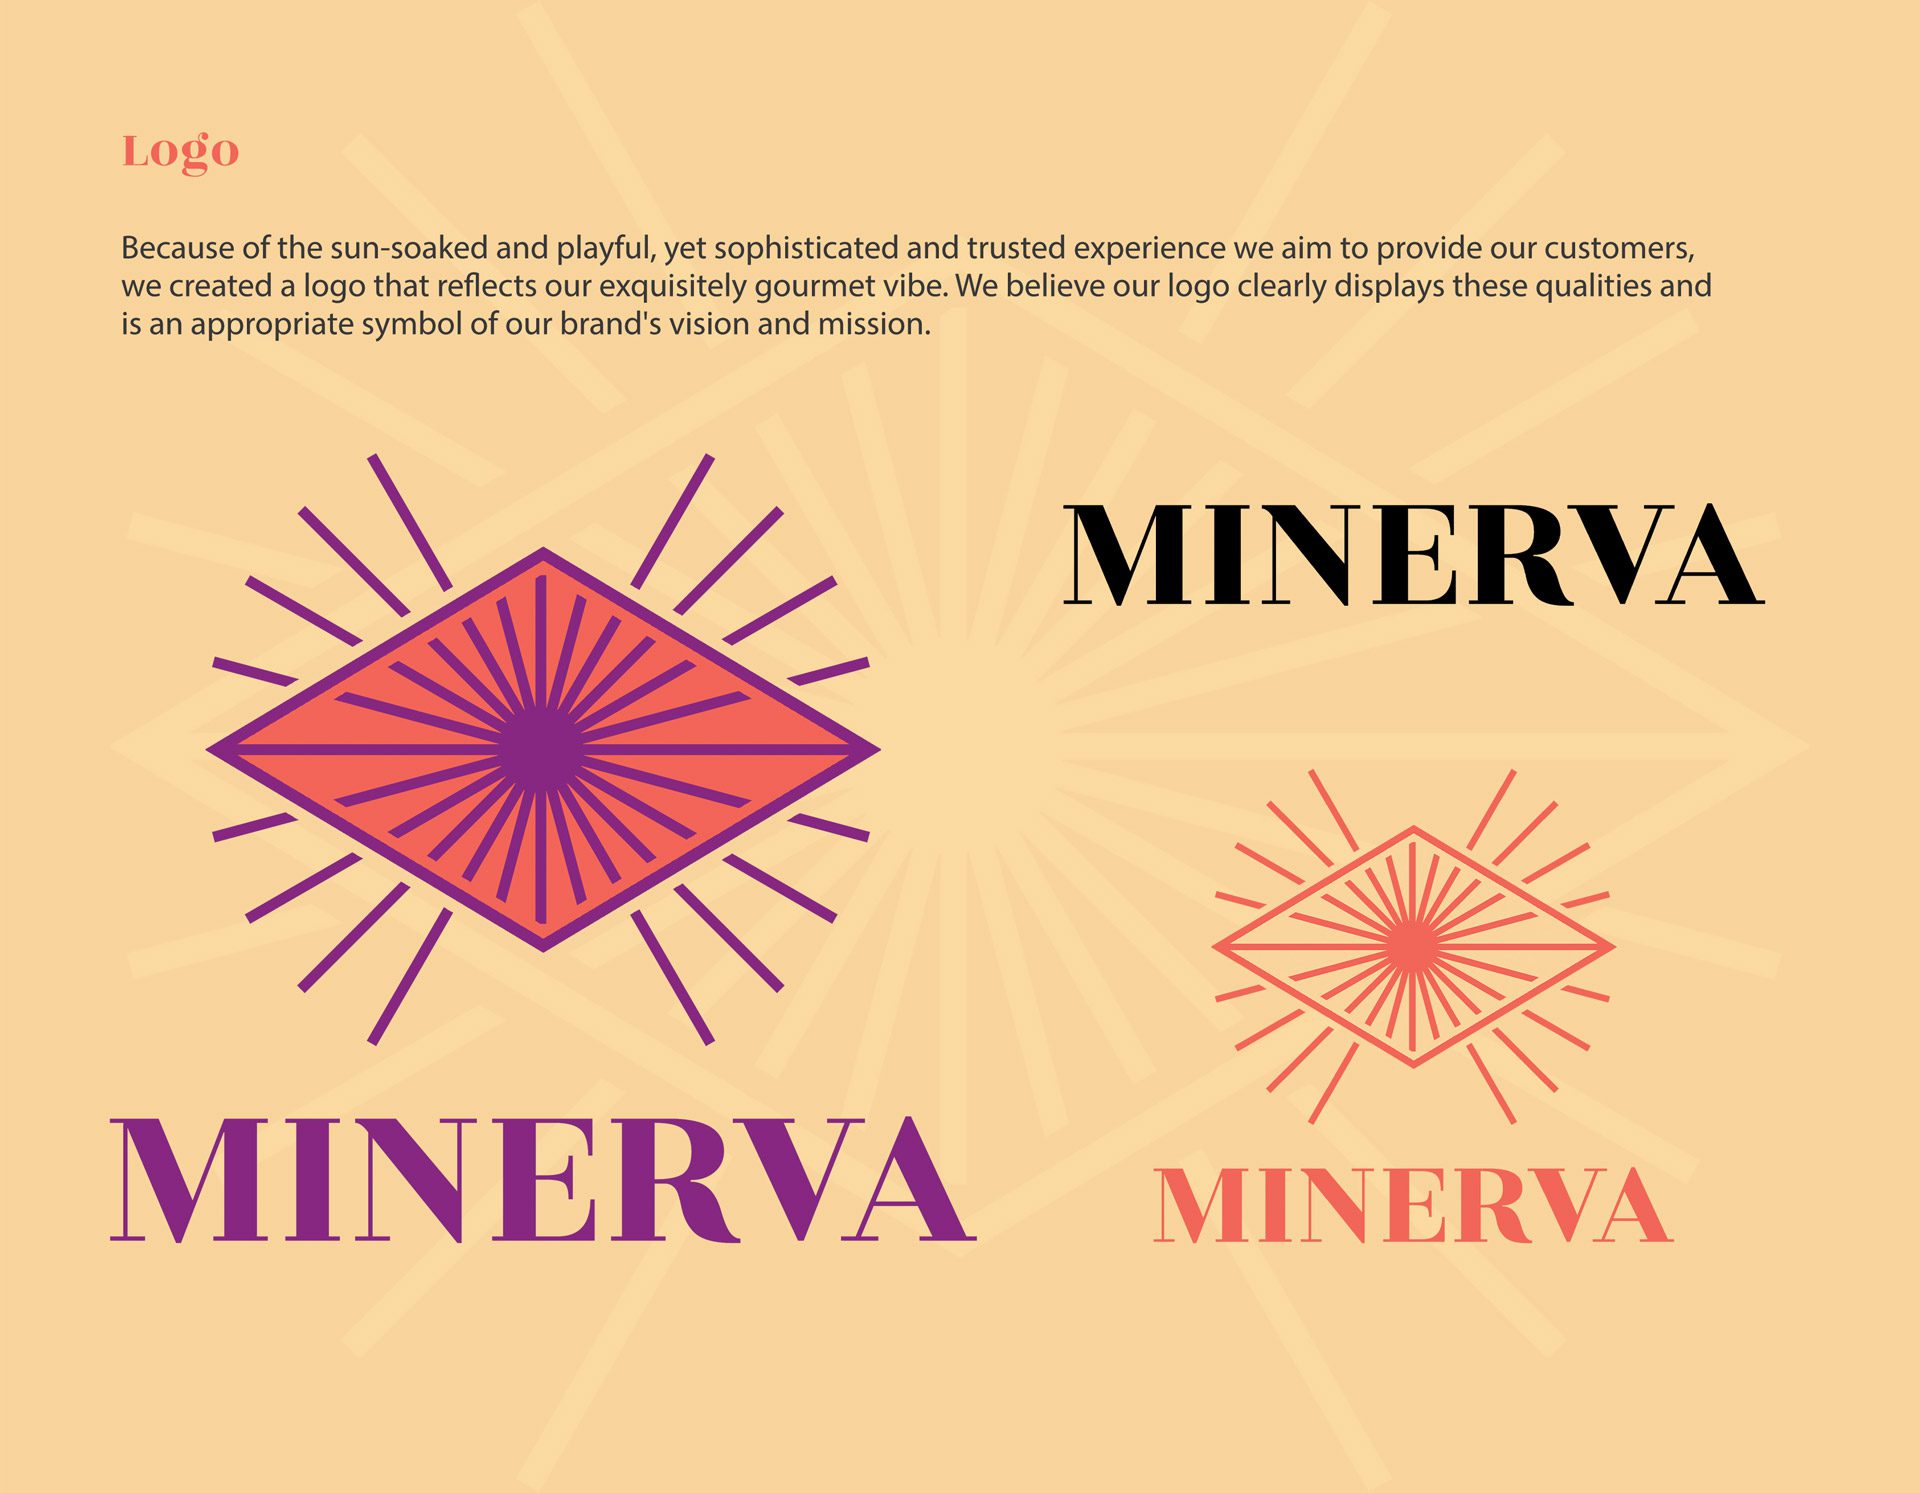 pufcreativ-our-work-brand-book-minerva-05-Logo